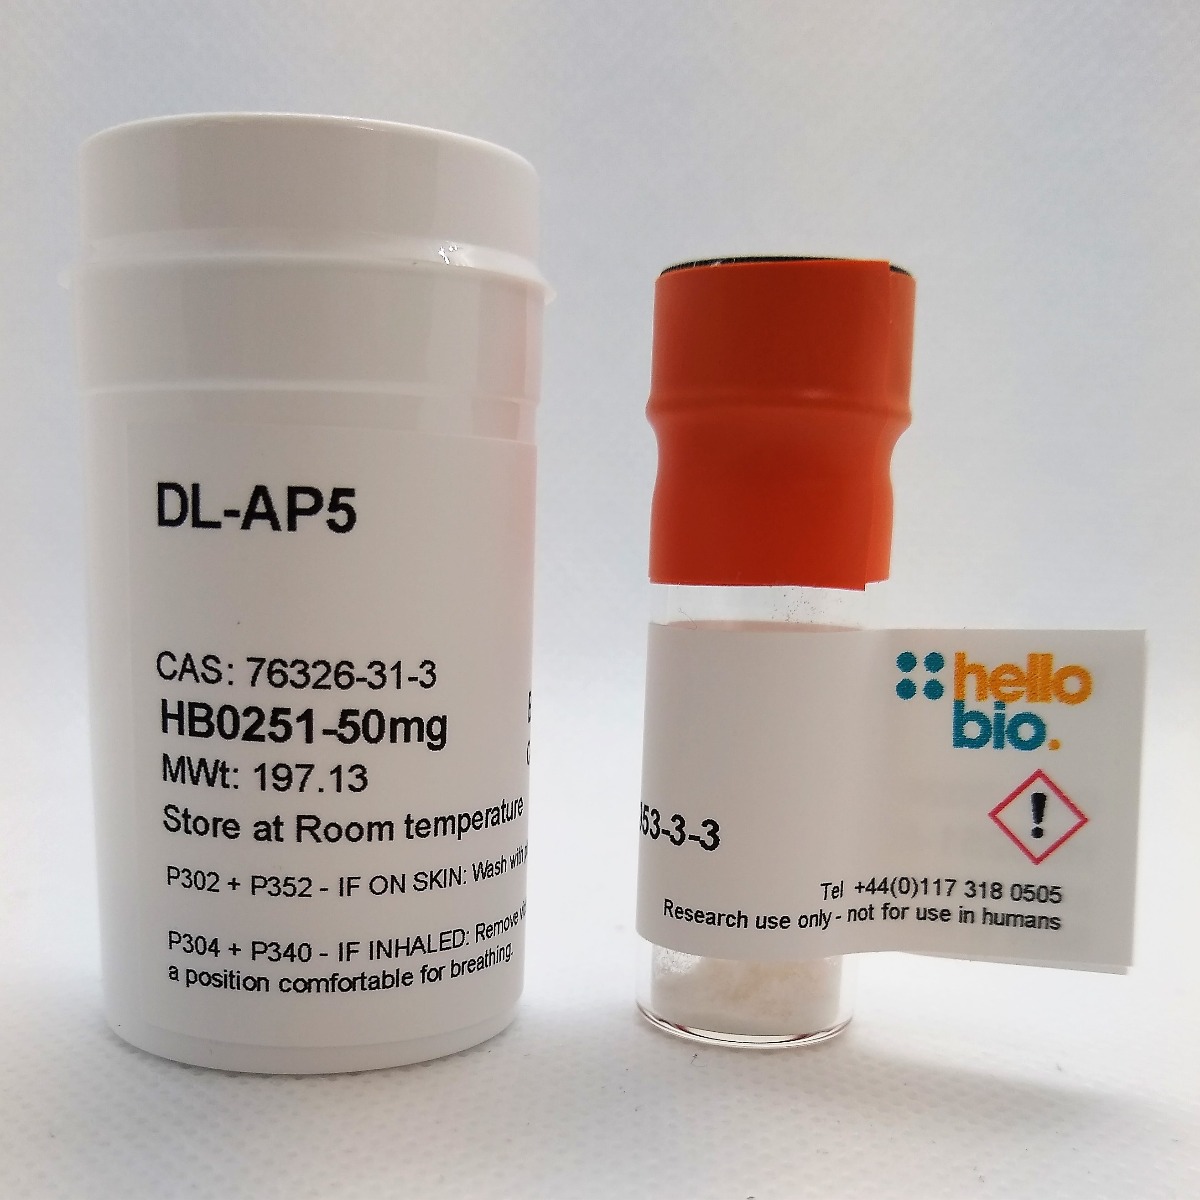 DL-AP5 product vial image | Hello Bio